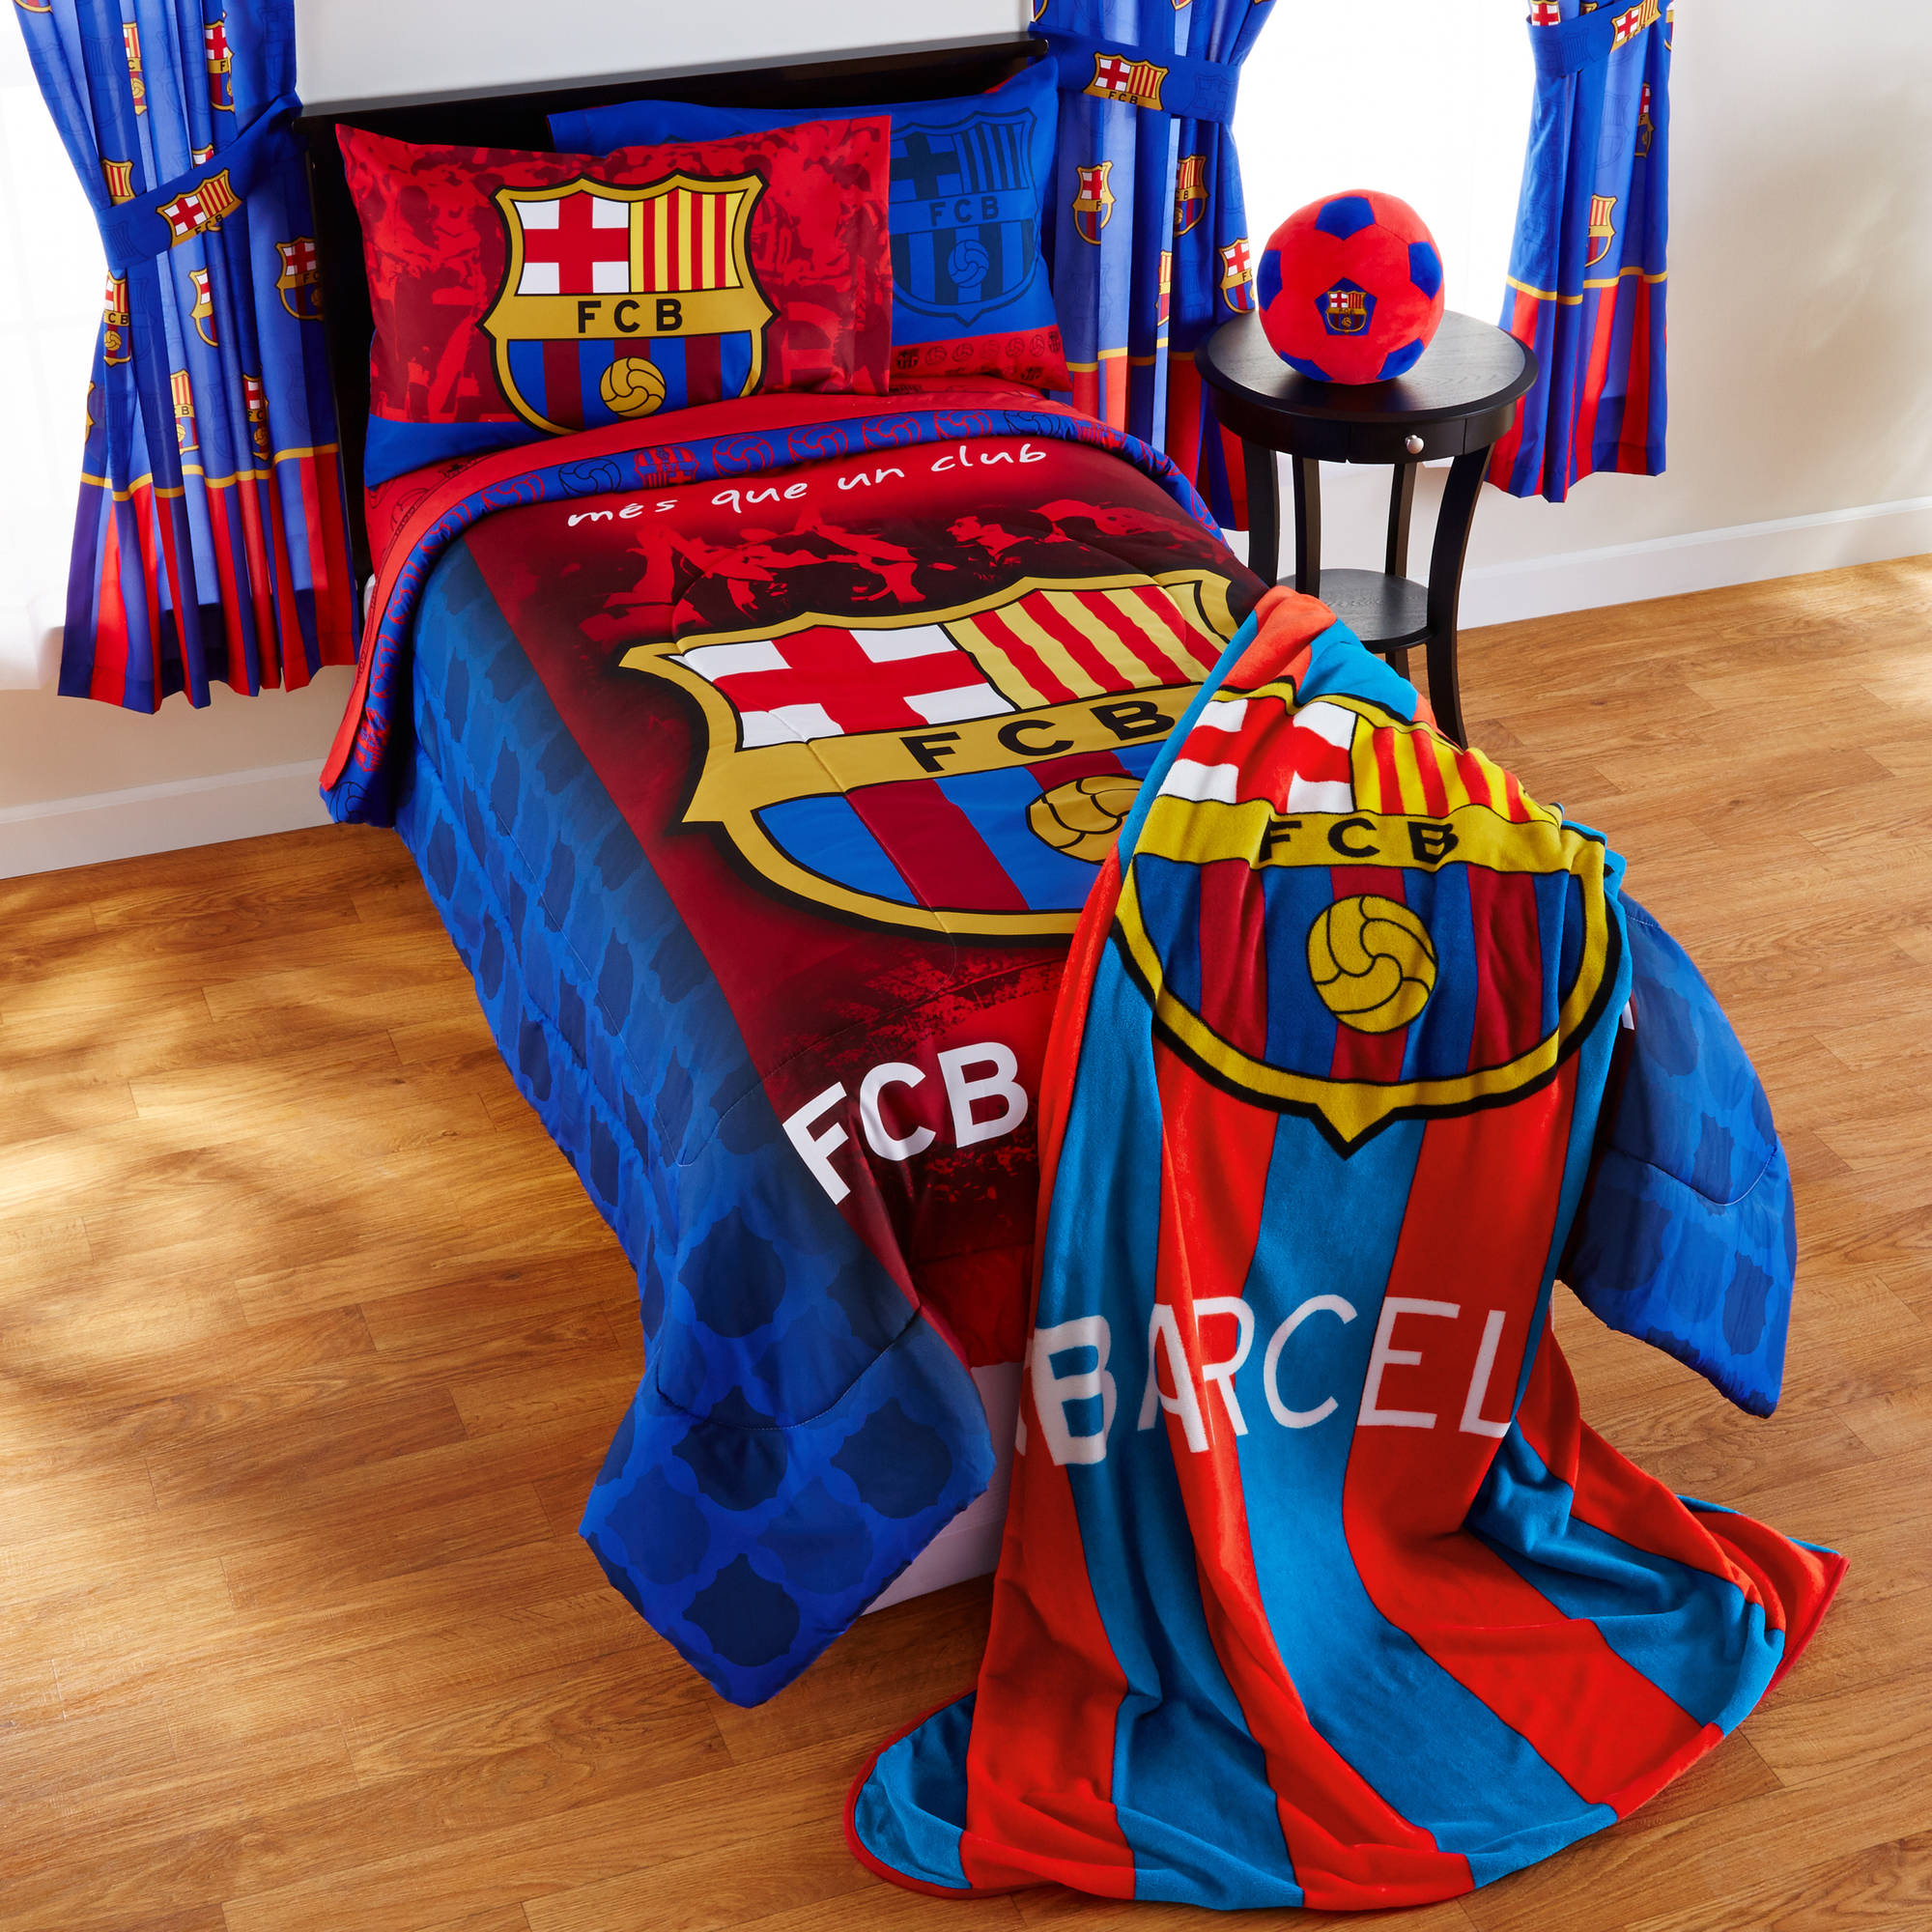 Barcelona 'FCB Soccer' Bedding Sheet Set - image 4 of 4